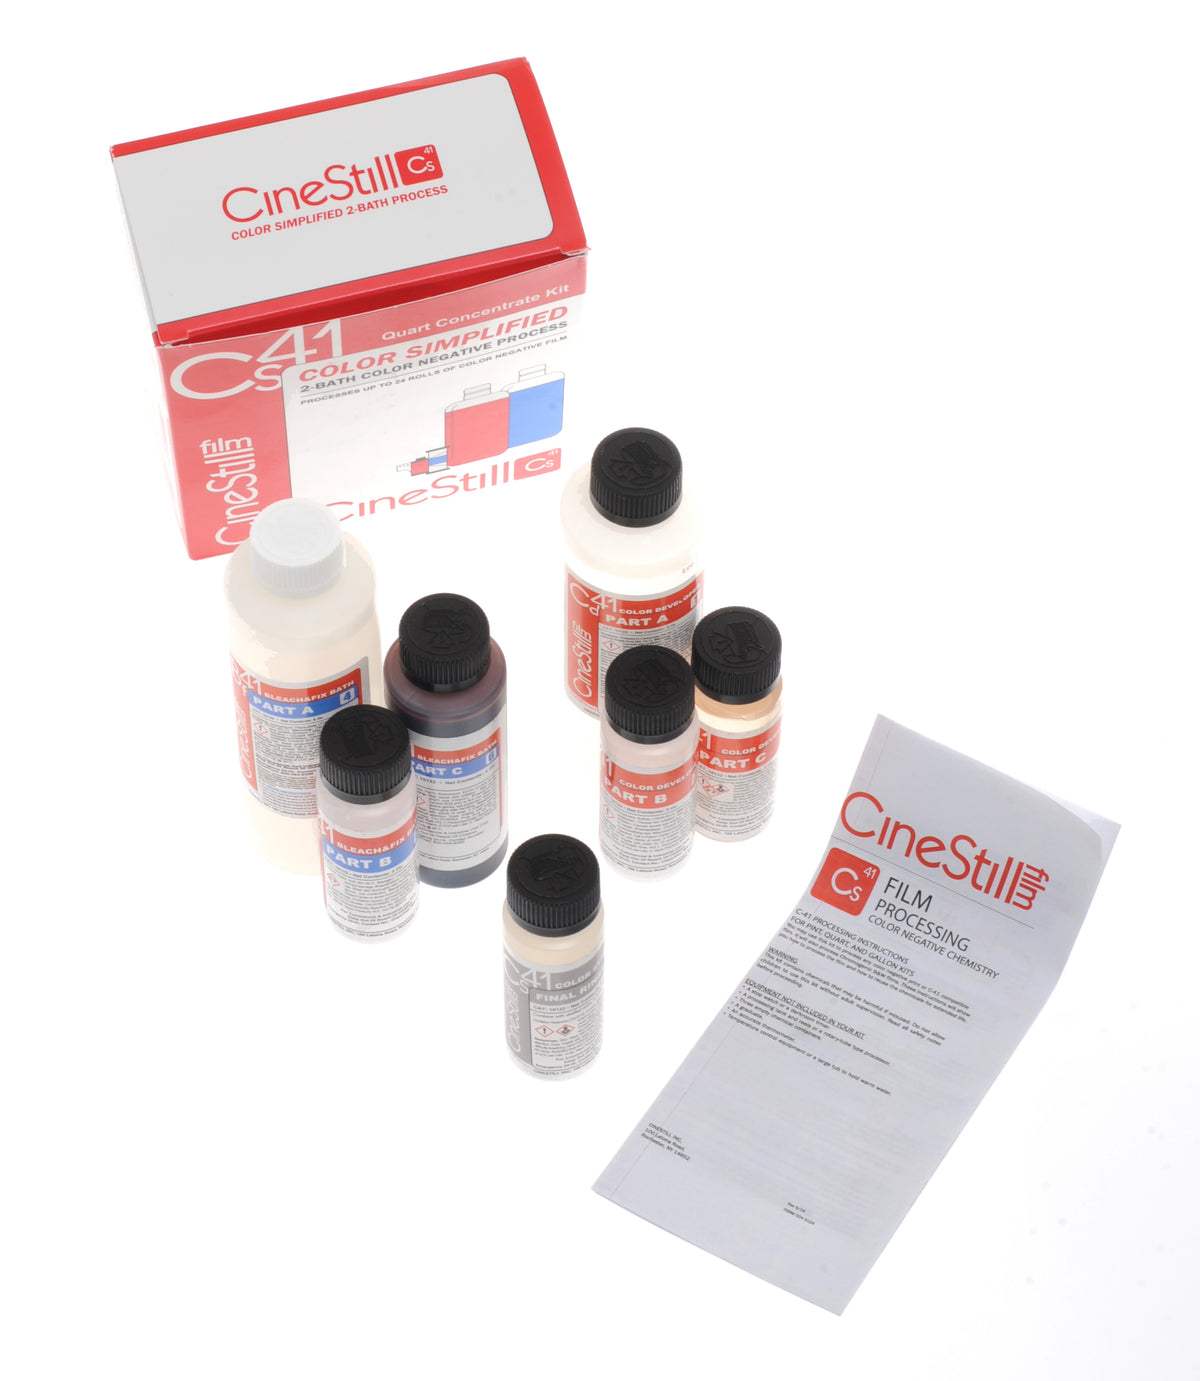 CineStill Cs41 Color Simplified Liquid Developing Quart Kit